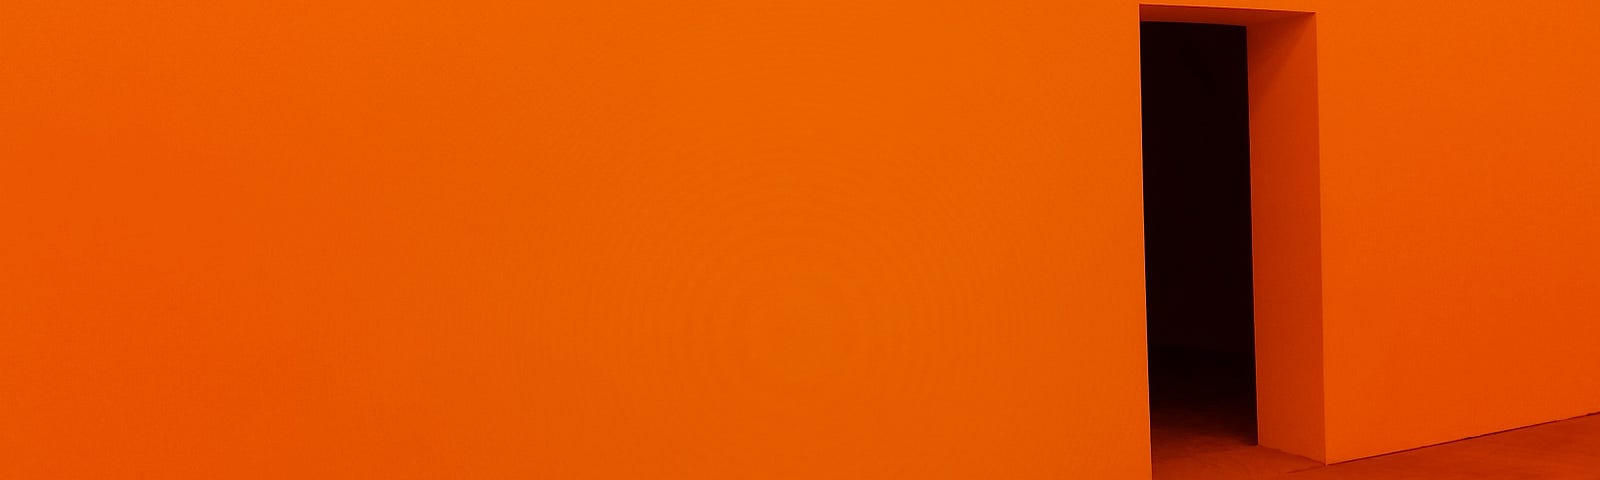 Foto com parede pintada na cor laranja e com abertura e chão de madeira em cor marrom